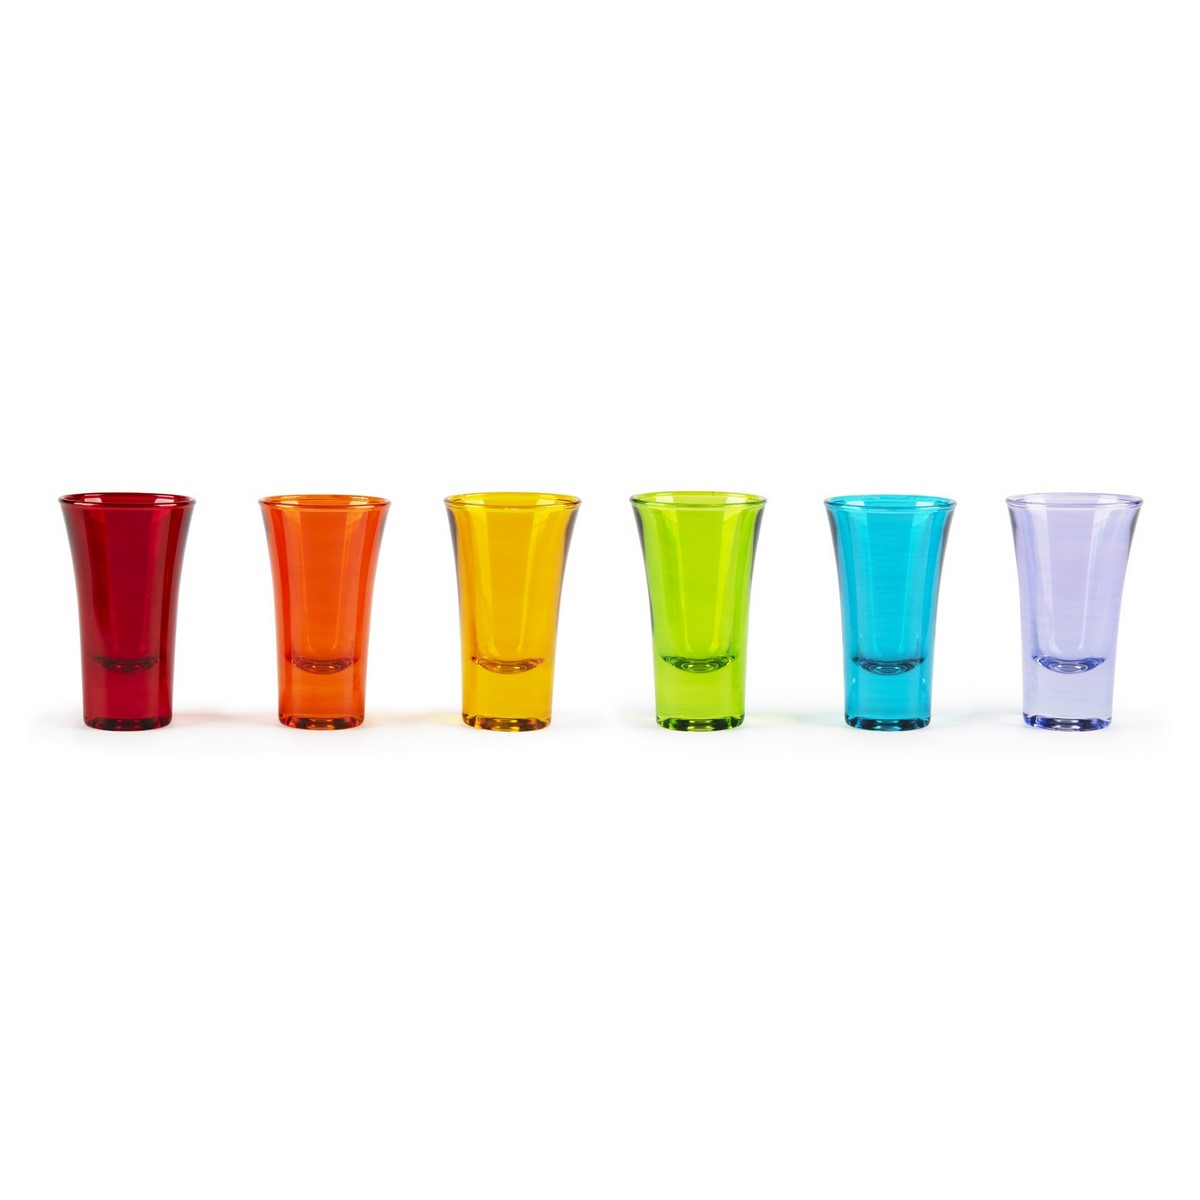 Excelsa set 3 bicchiere acqua Cactus vetro decorato fantasia cod.62851 -  Casalinghi Excelsa - Af Interni Shop